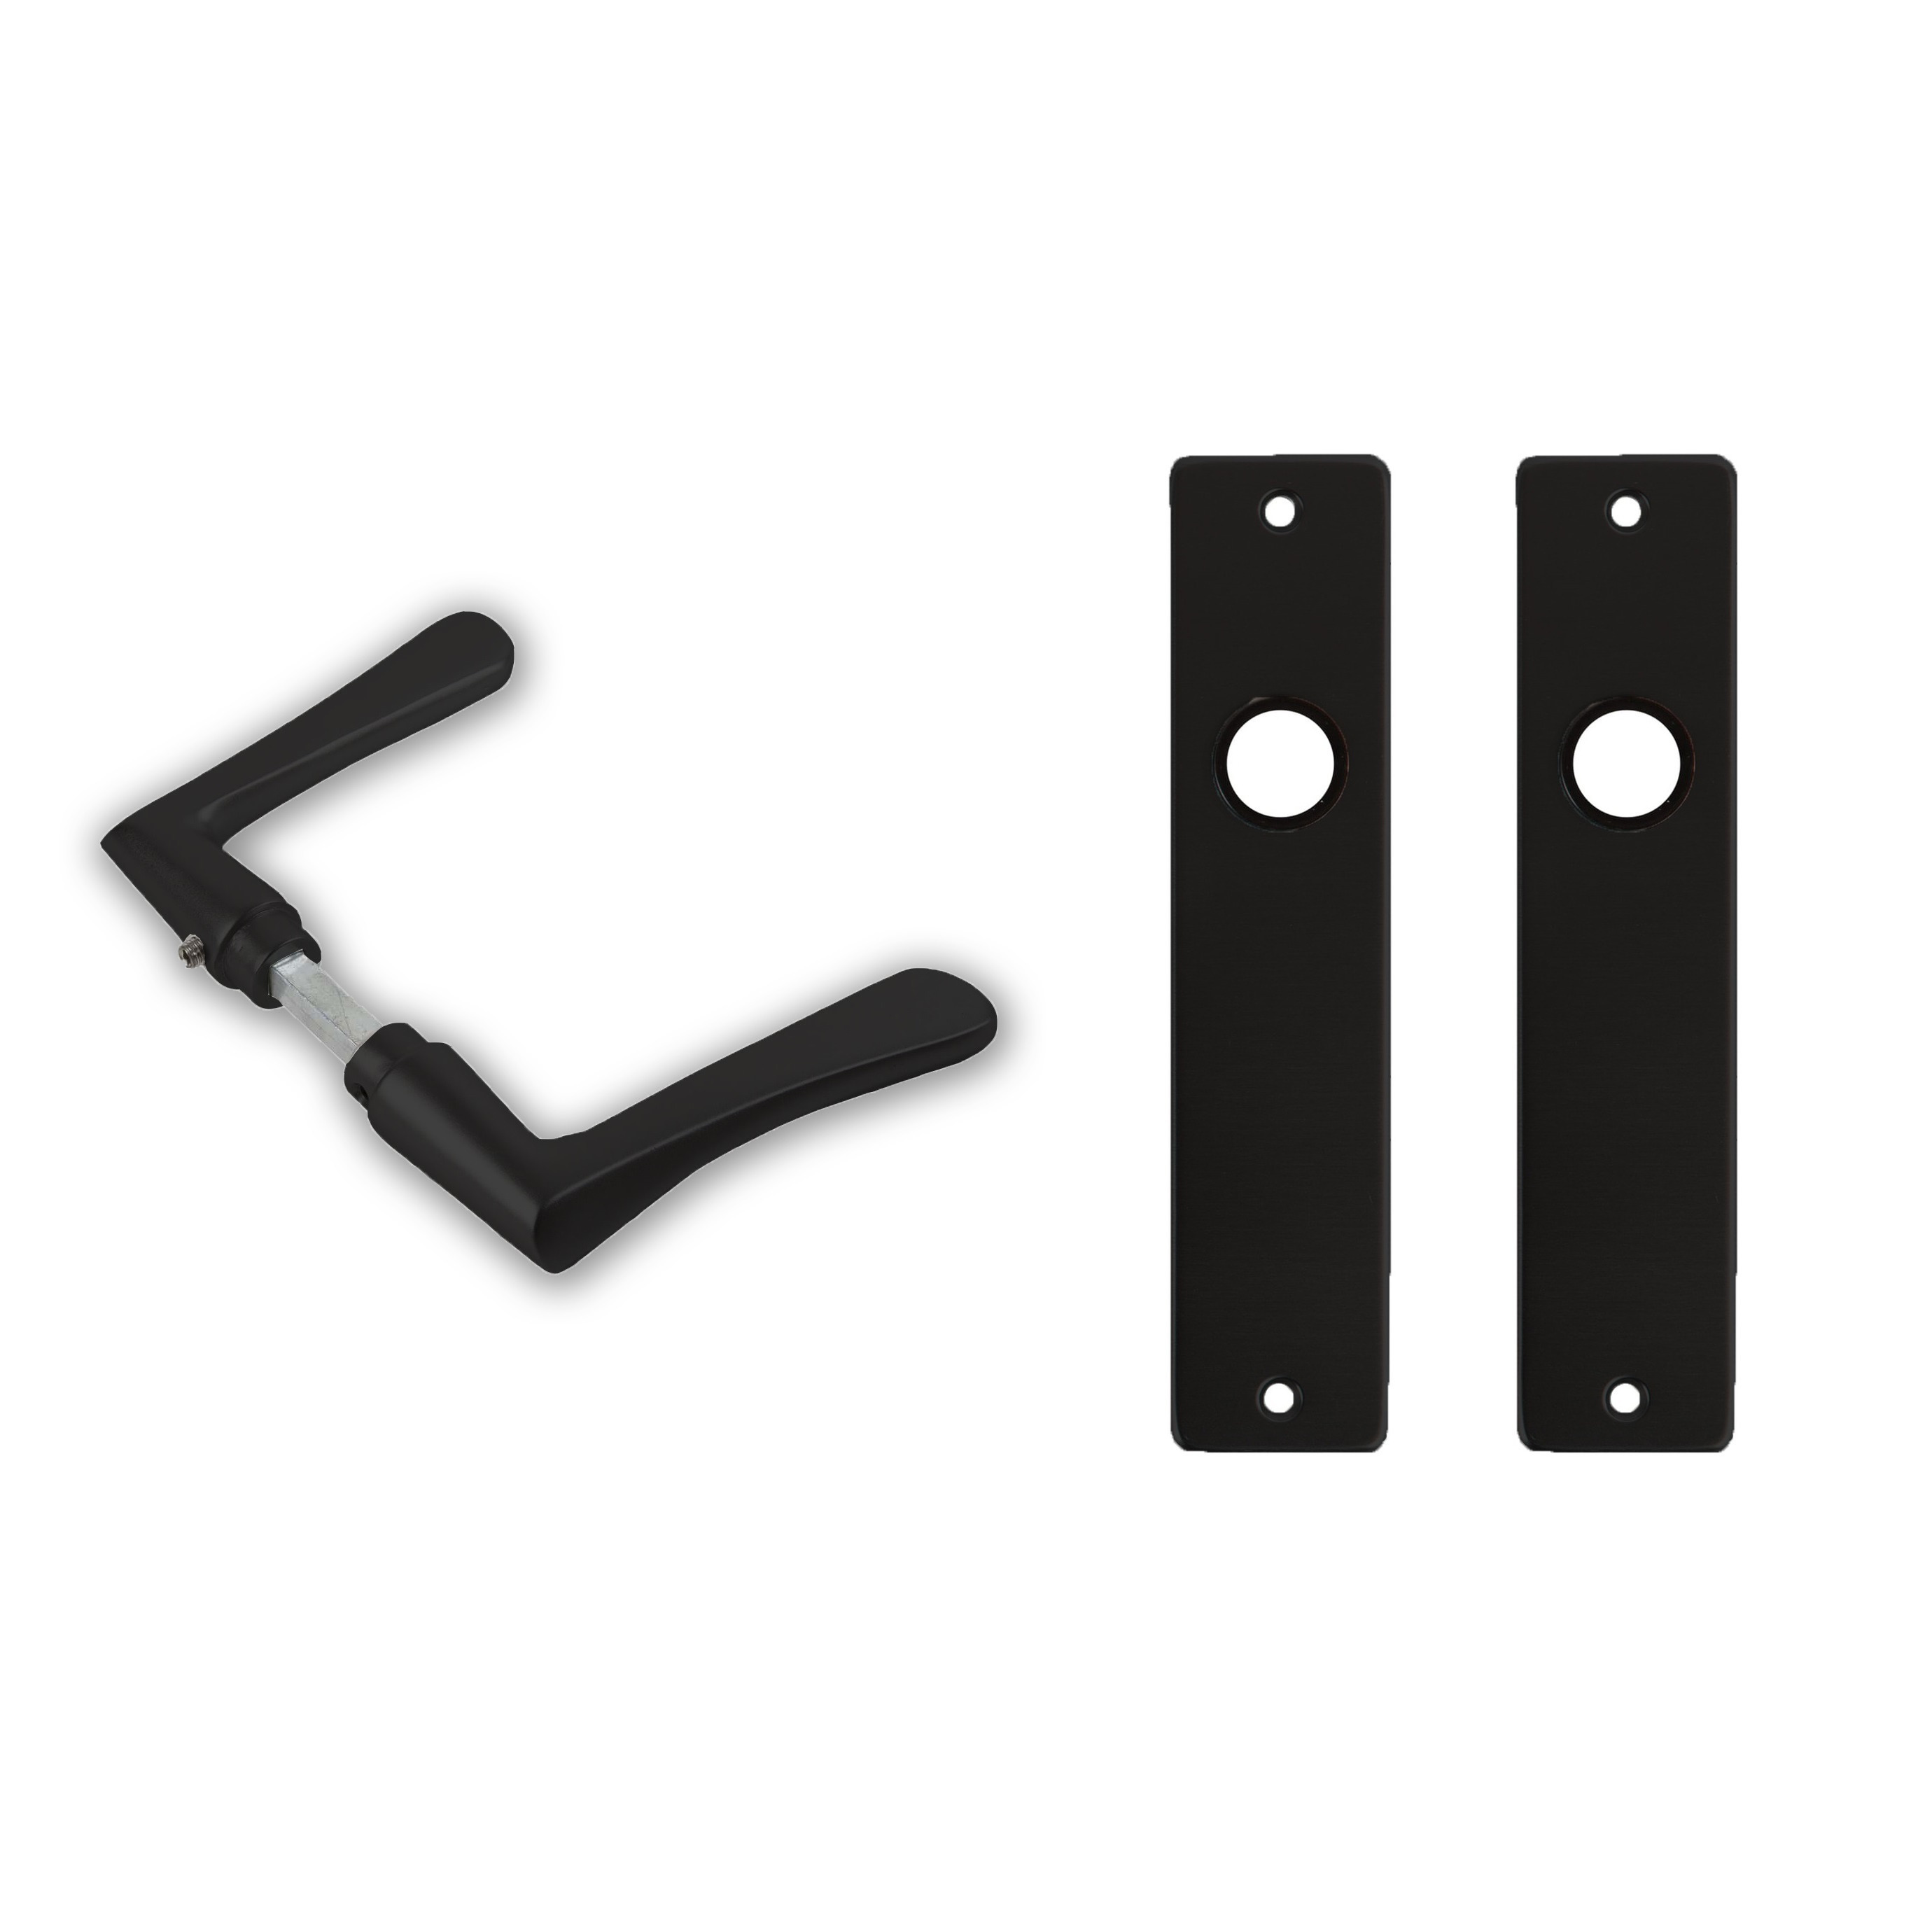 1x paar deurkrukset-deurgarnituur zwart met zwarte vlindermodel deurklinken en deurschilden